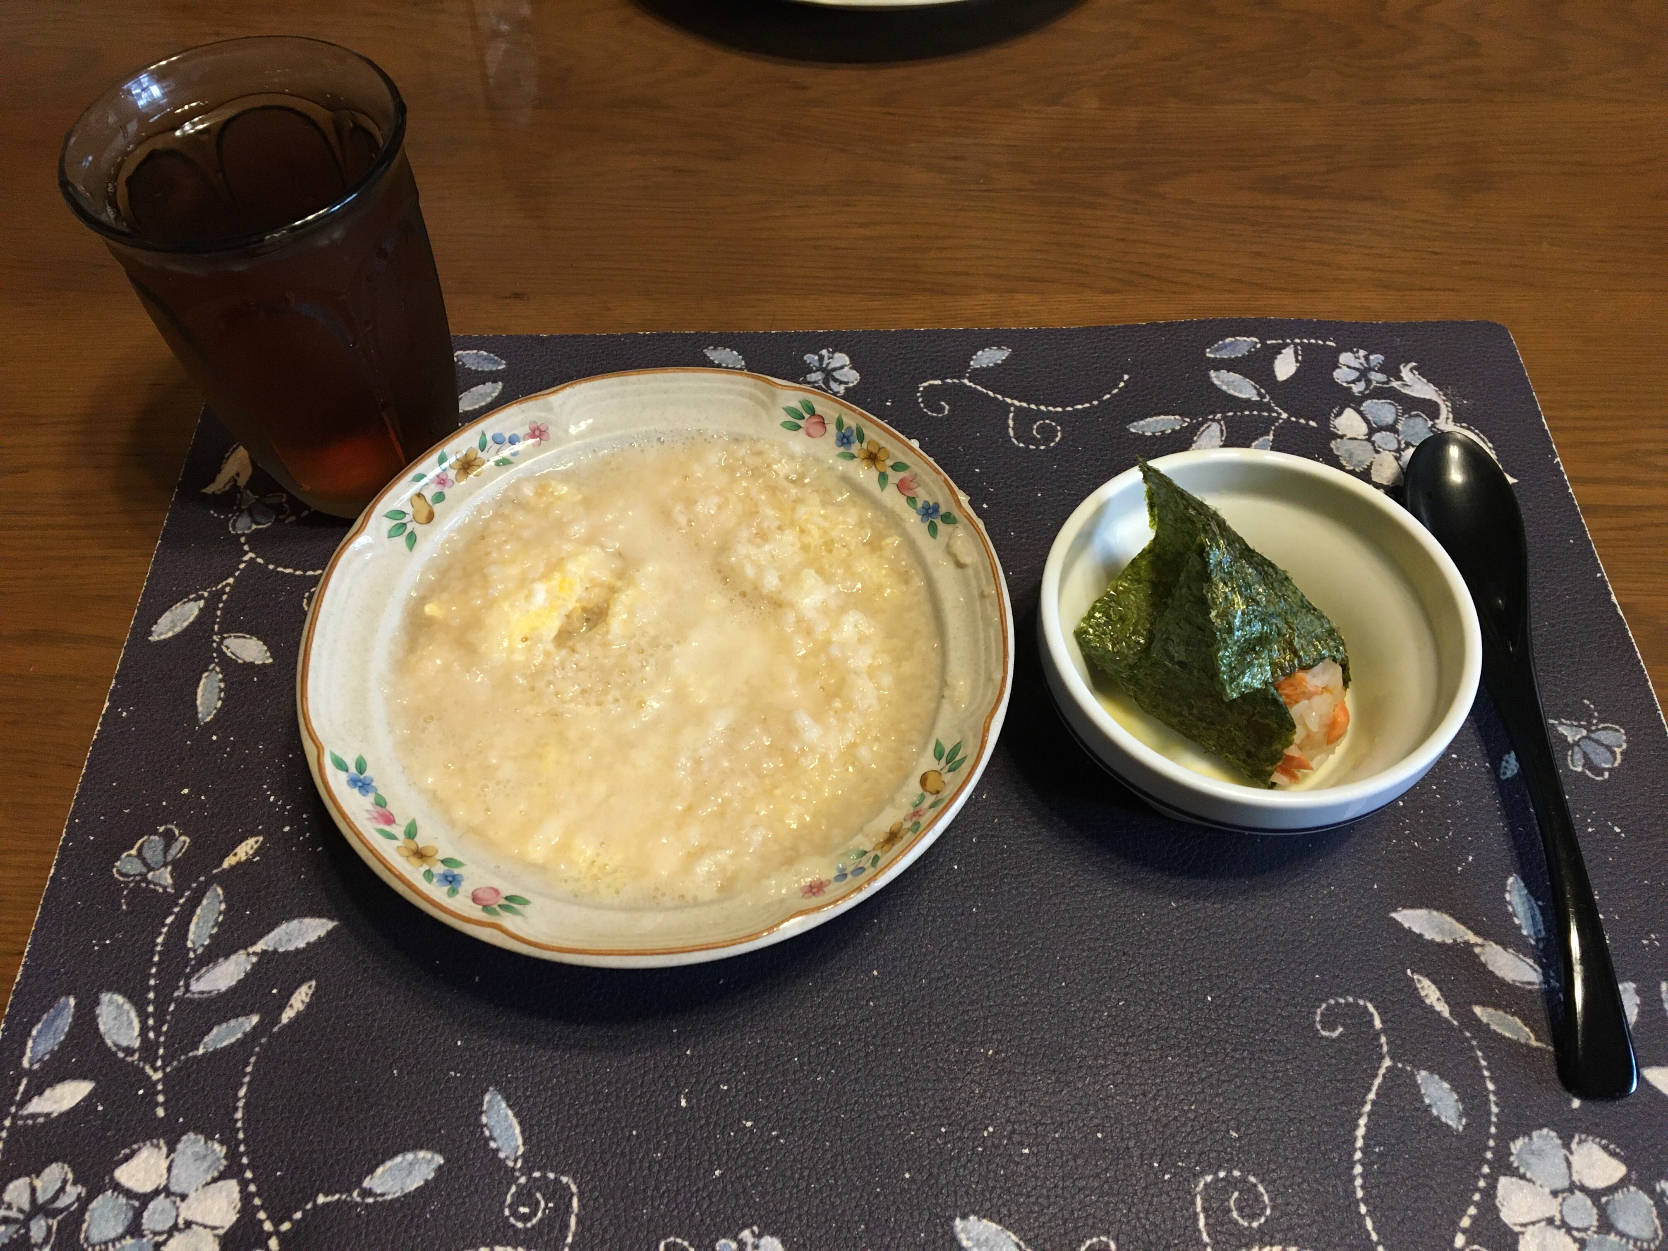 オートミール中華粥、焼き鮭の混ぜご飯おにぎり、烏龍茶(朝ご飯)